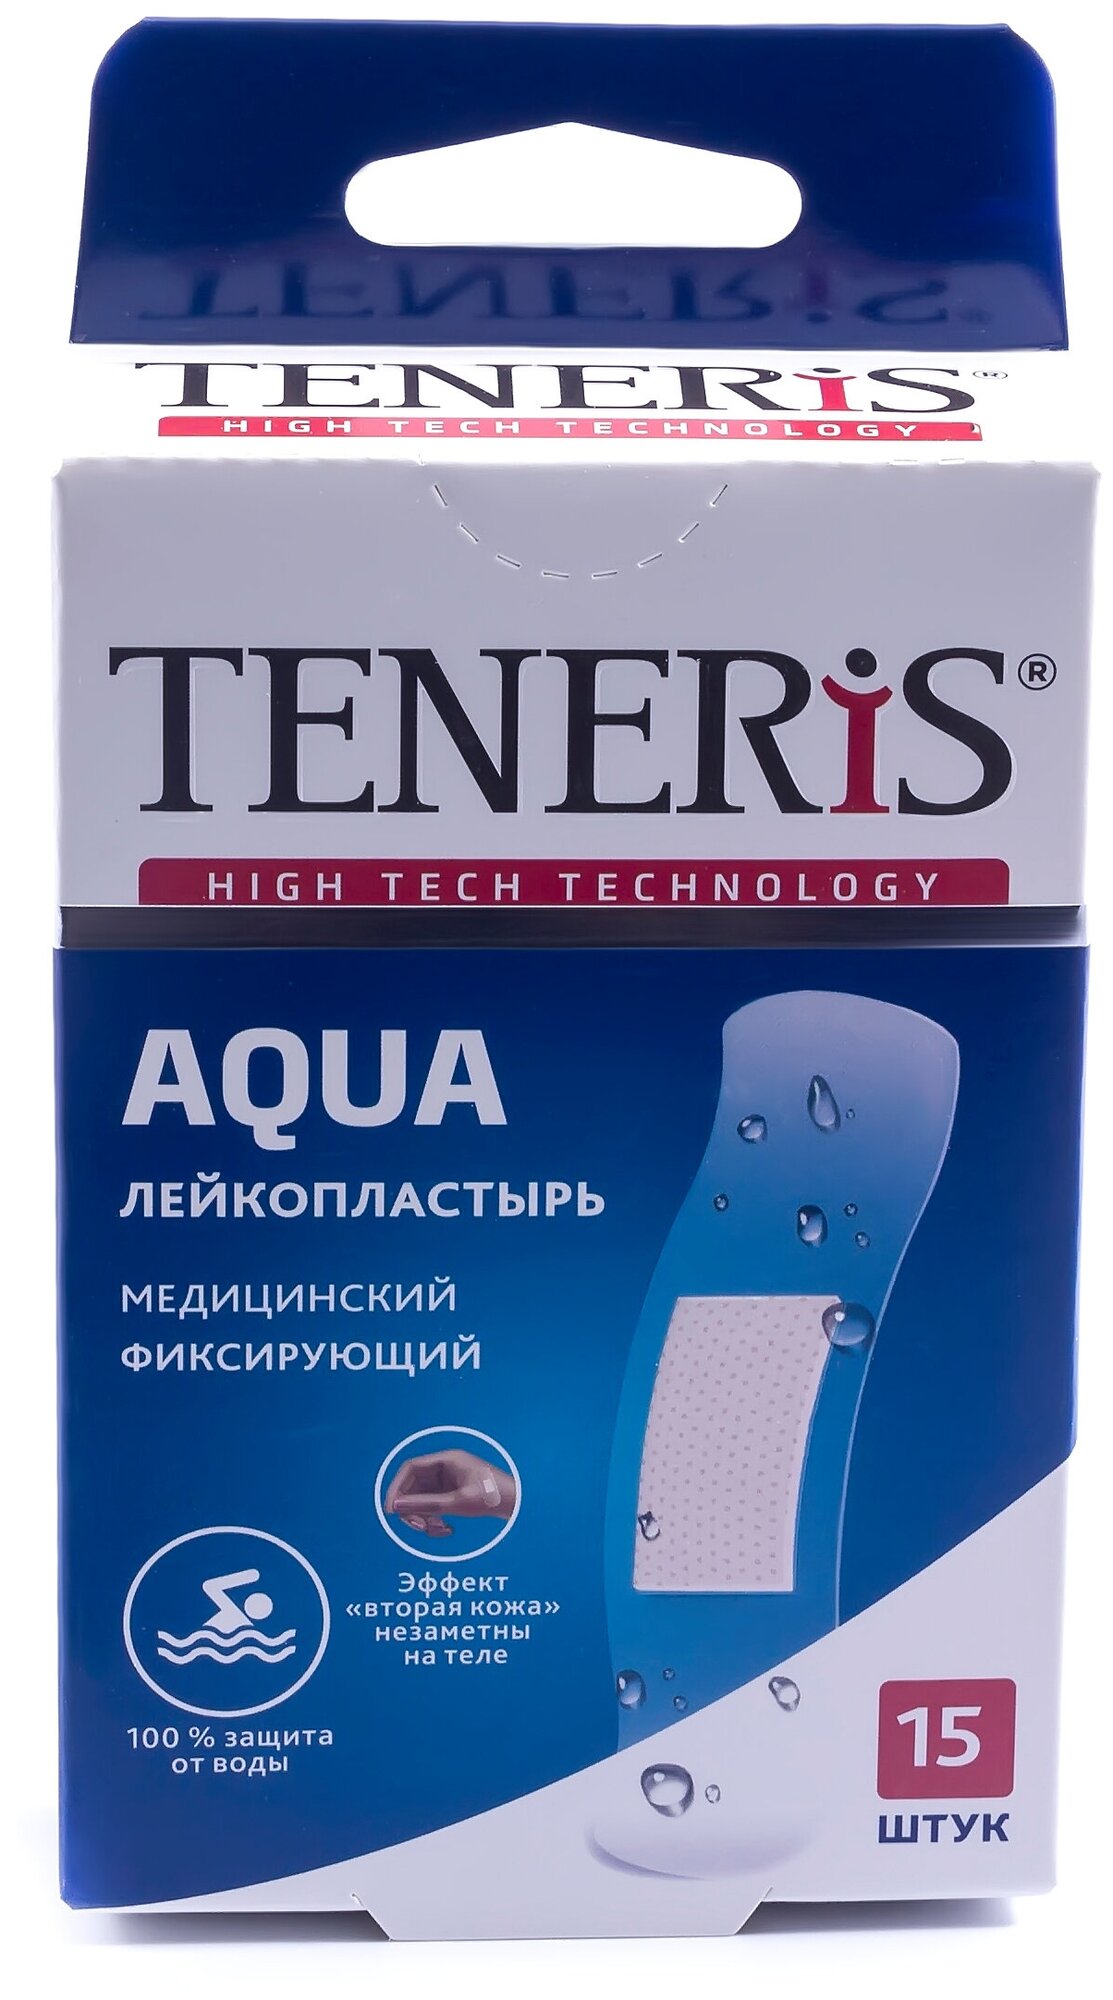 Набор пластырей 15 шт. TENERIS AQUA водонепроницаемый, на полимерной основе, коробка с европодвесом, 0208-004